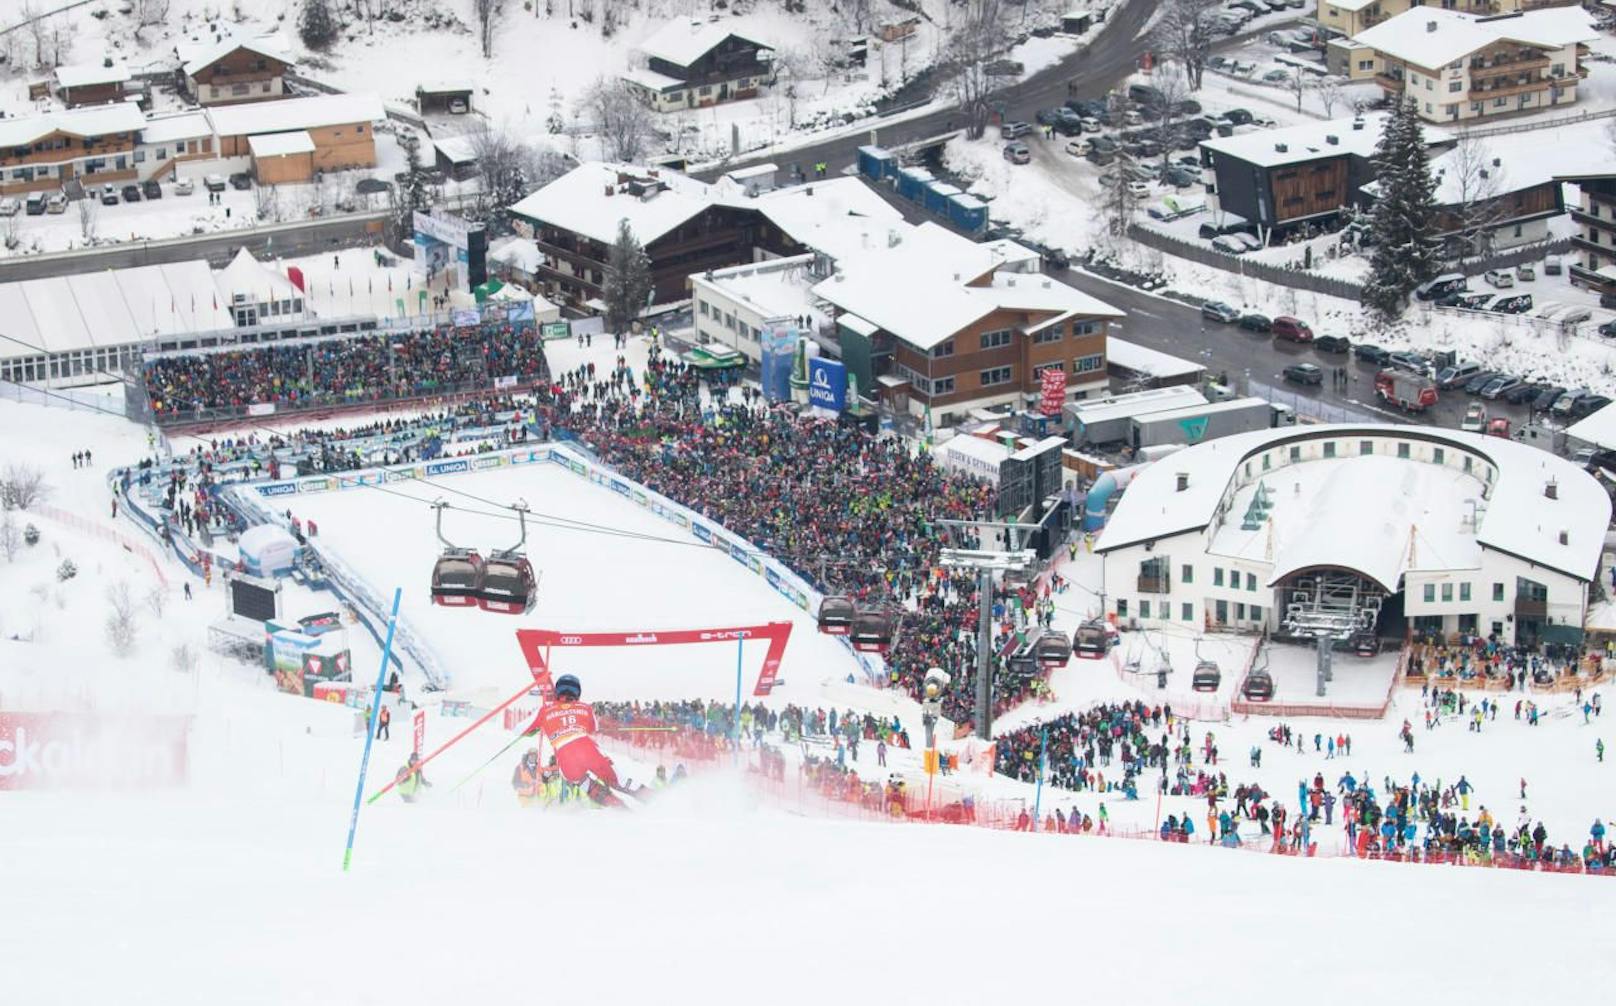 Steigt der Ski-Weltcup bald in Saalbach?